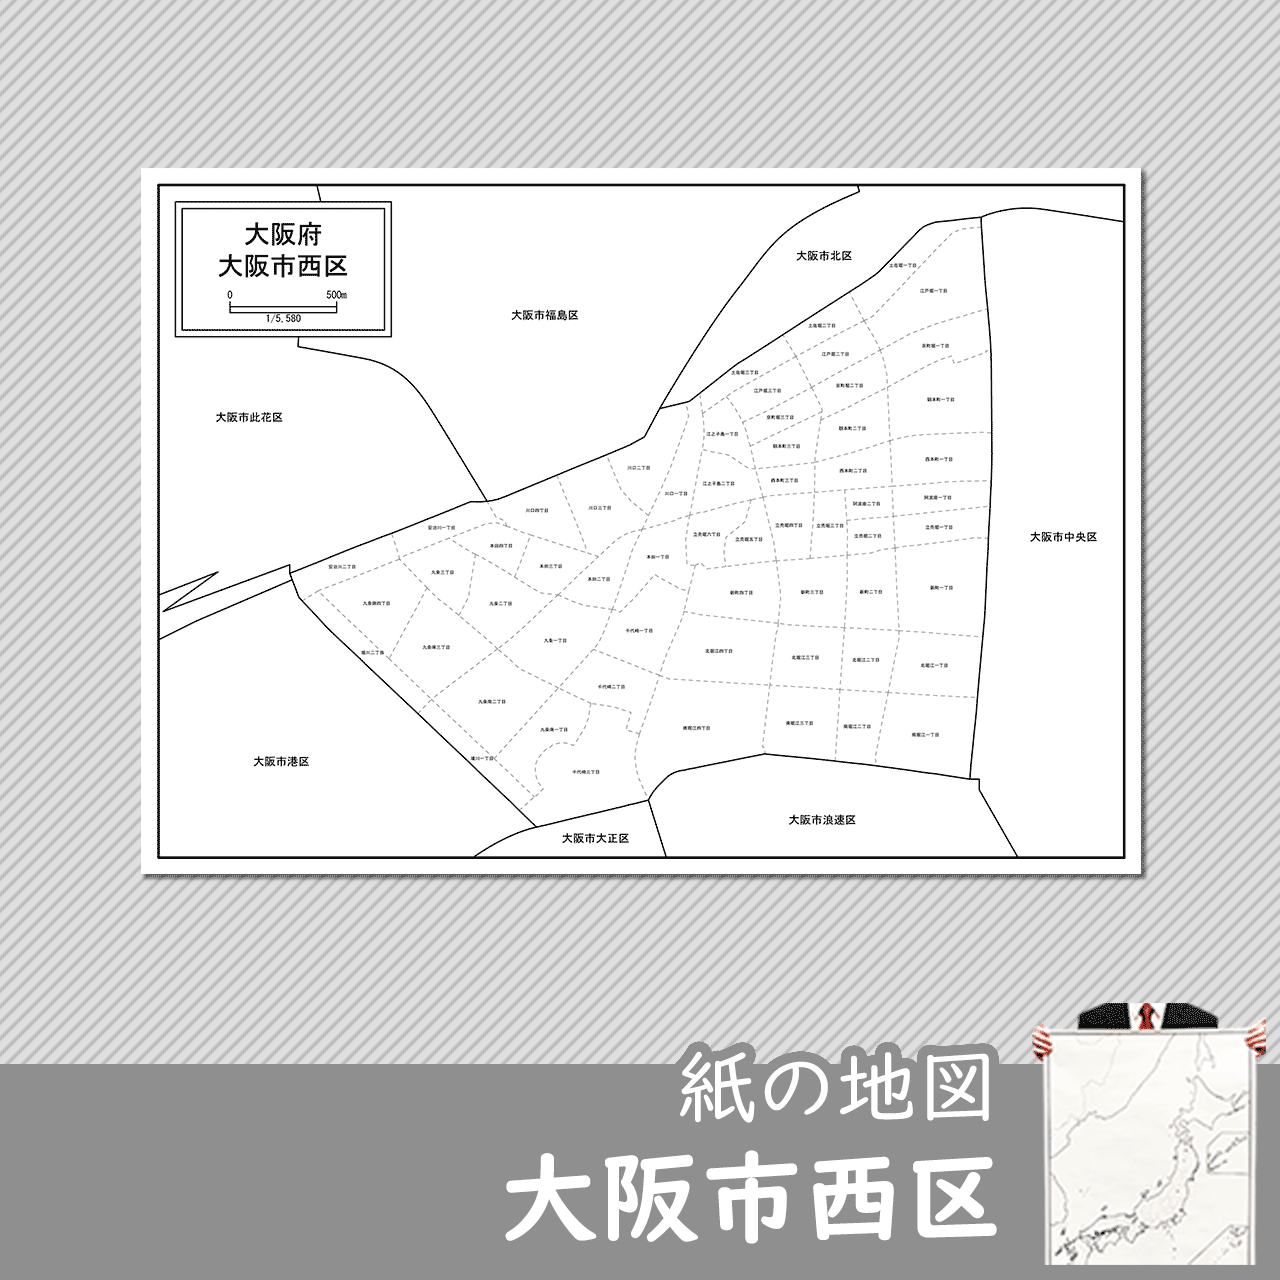 大阪市西区の紙の白地図のサムネイル